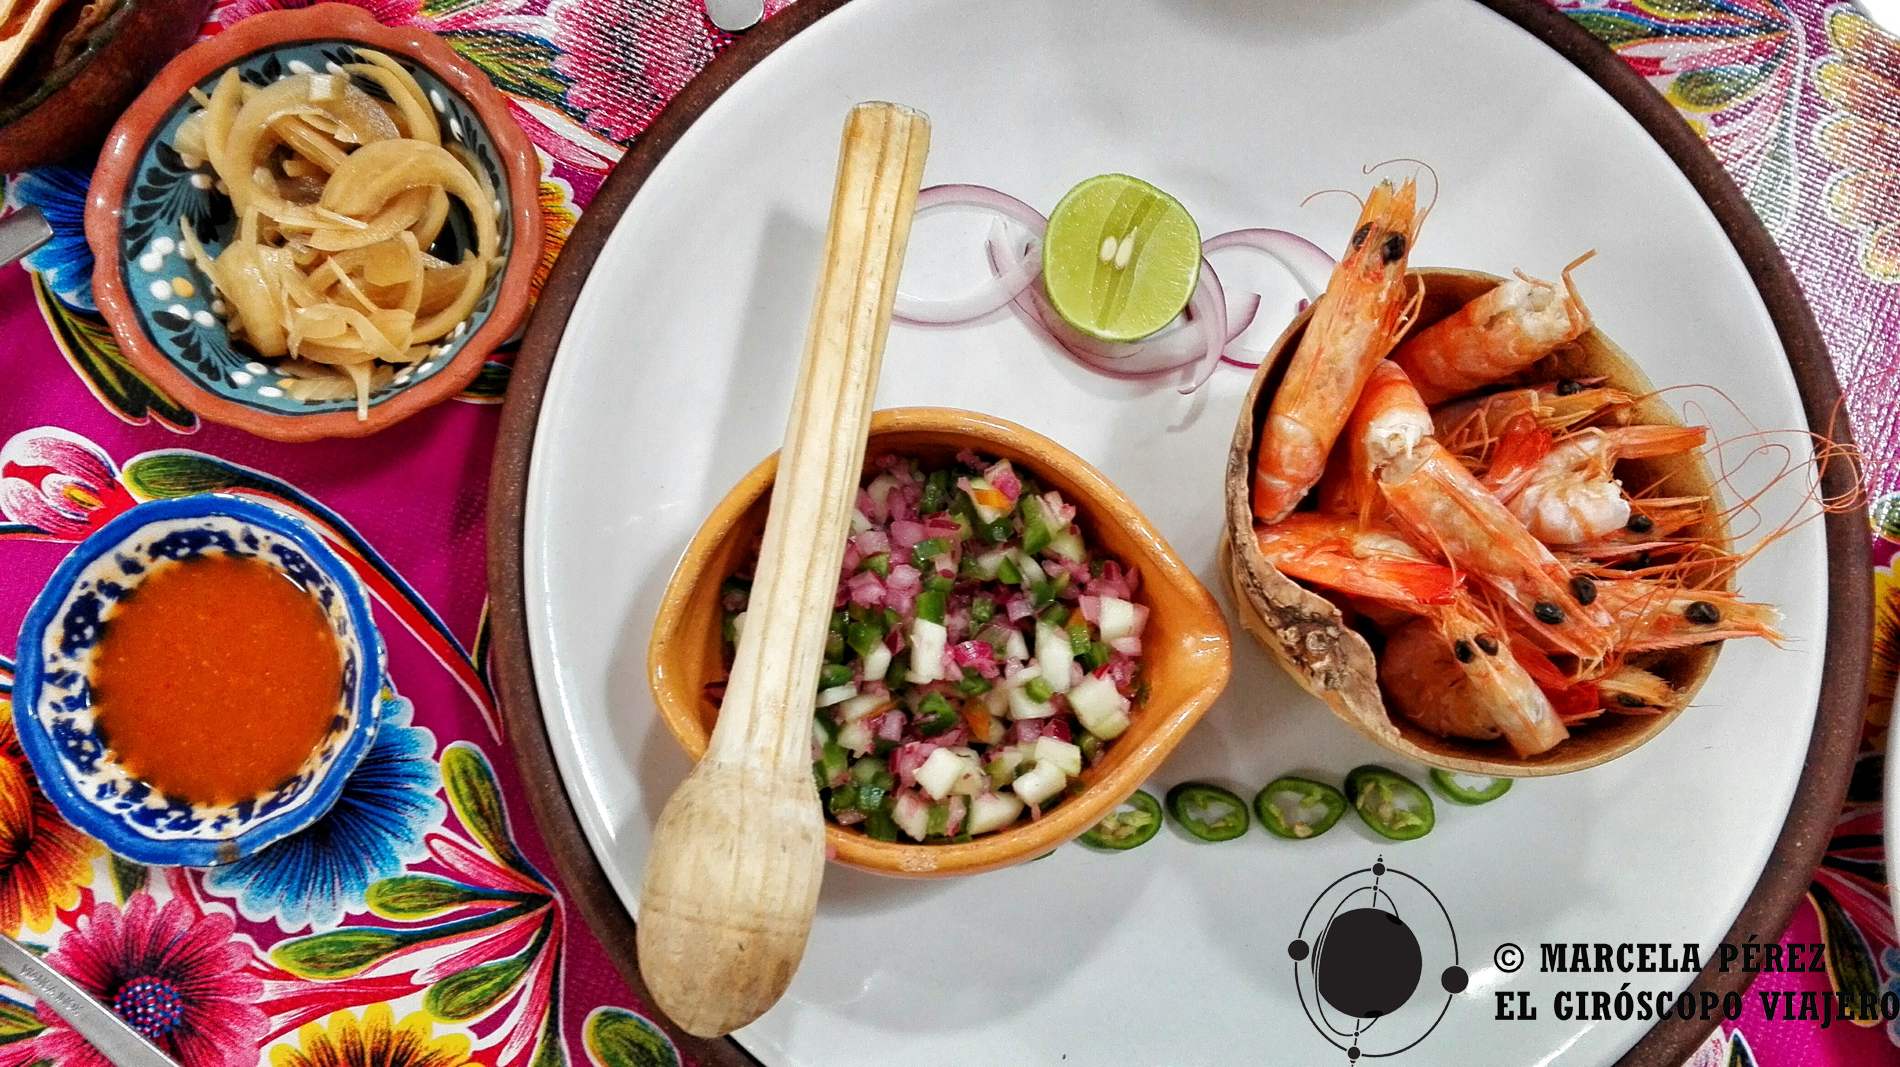 Oaxaca, la cuna de la gastronomía mexicana